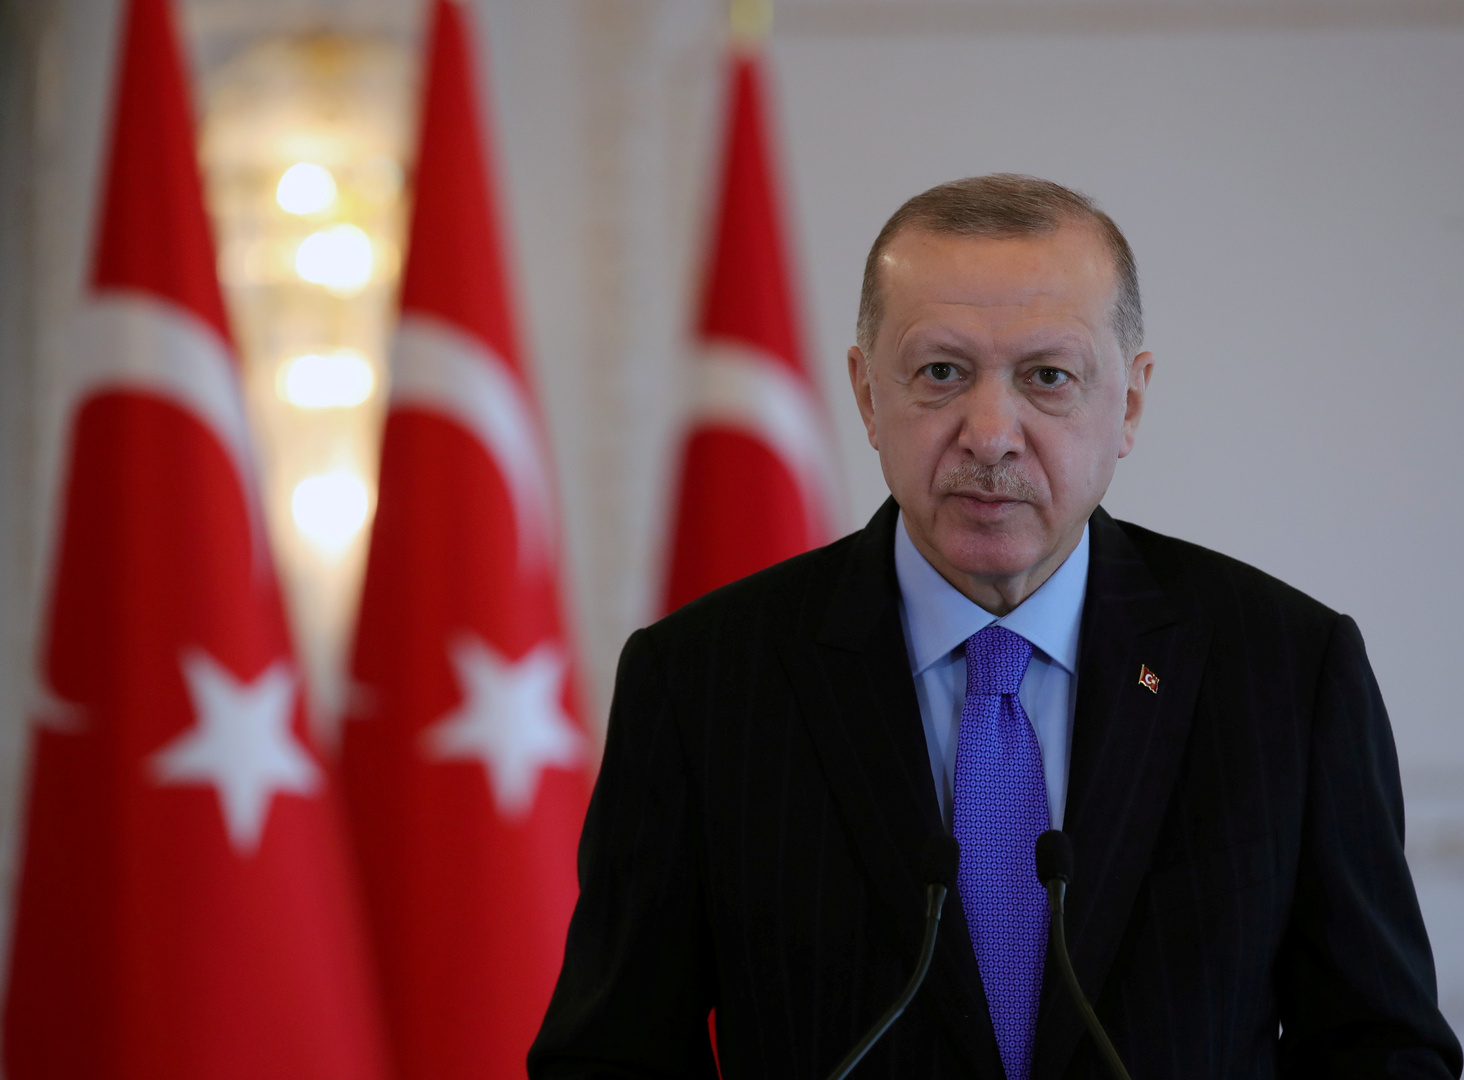 دبلوماسي إيطالي: أردوغان لا يتقبل النقد ويمكن احتواء الأزمة بين بلدينا